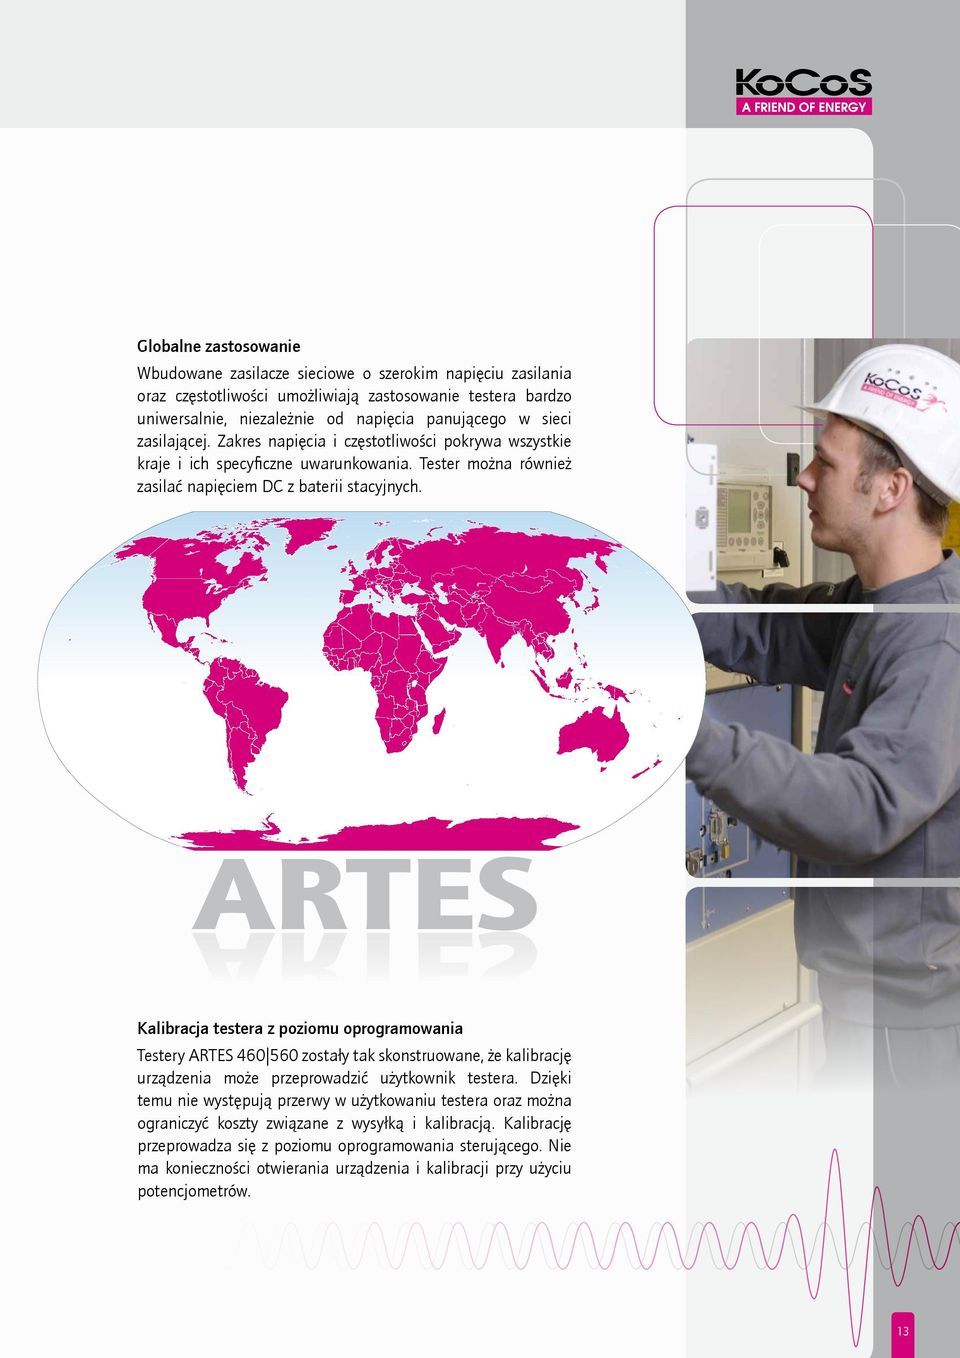 ARTES ARTES Kalibracja testera z poziomu oprogramowania Testery ARTES 460 560 zostały tak skonstruowane, że kalibrację urządzenia może przeprowadzić użytkownik testera.